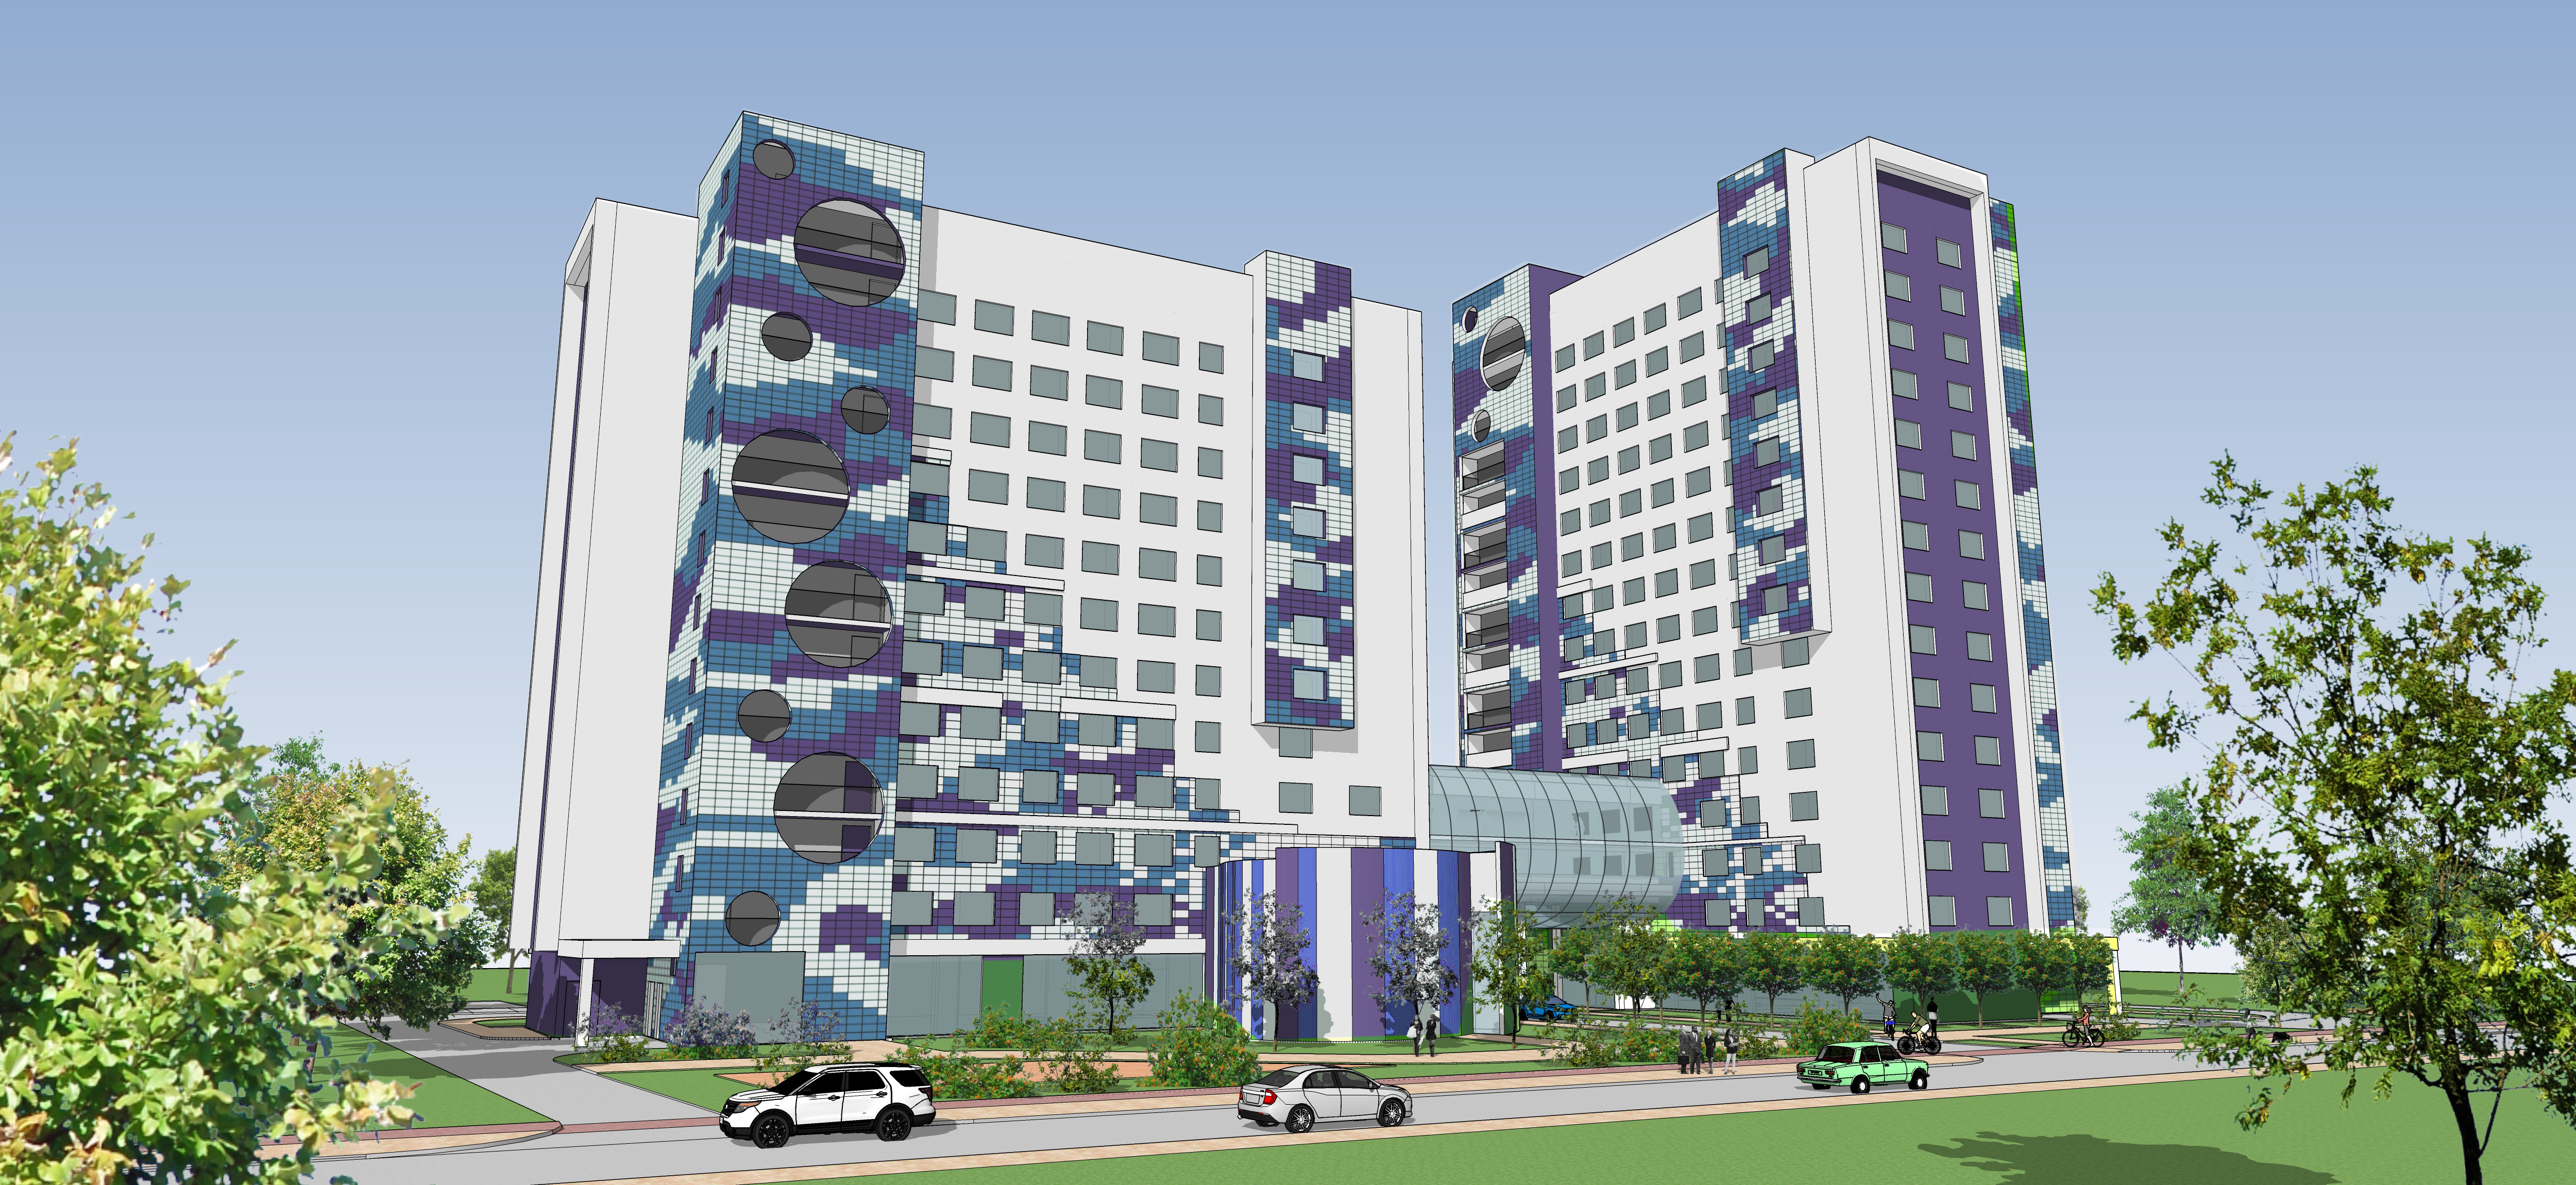 К 2020 году ТГУ построит новое 16-этажное общежитие на 800 мест